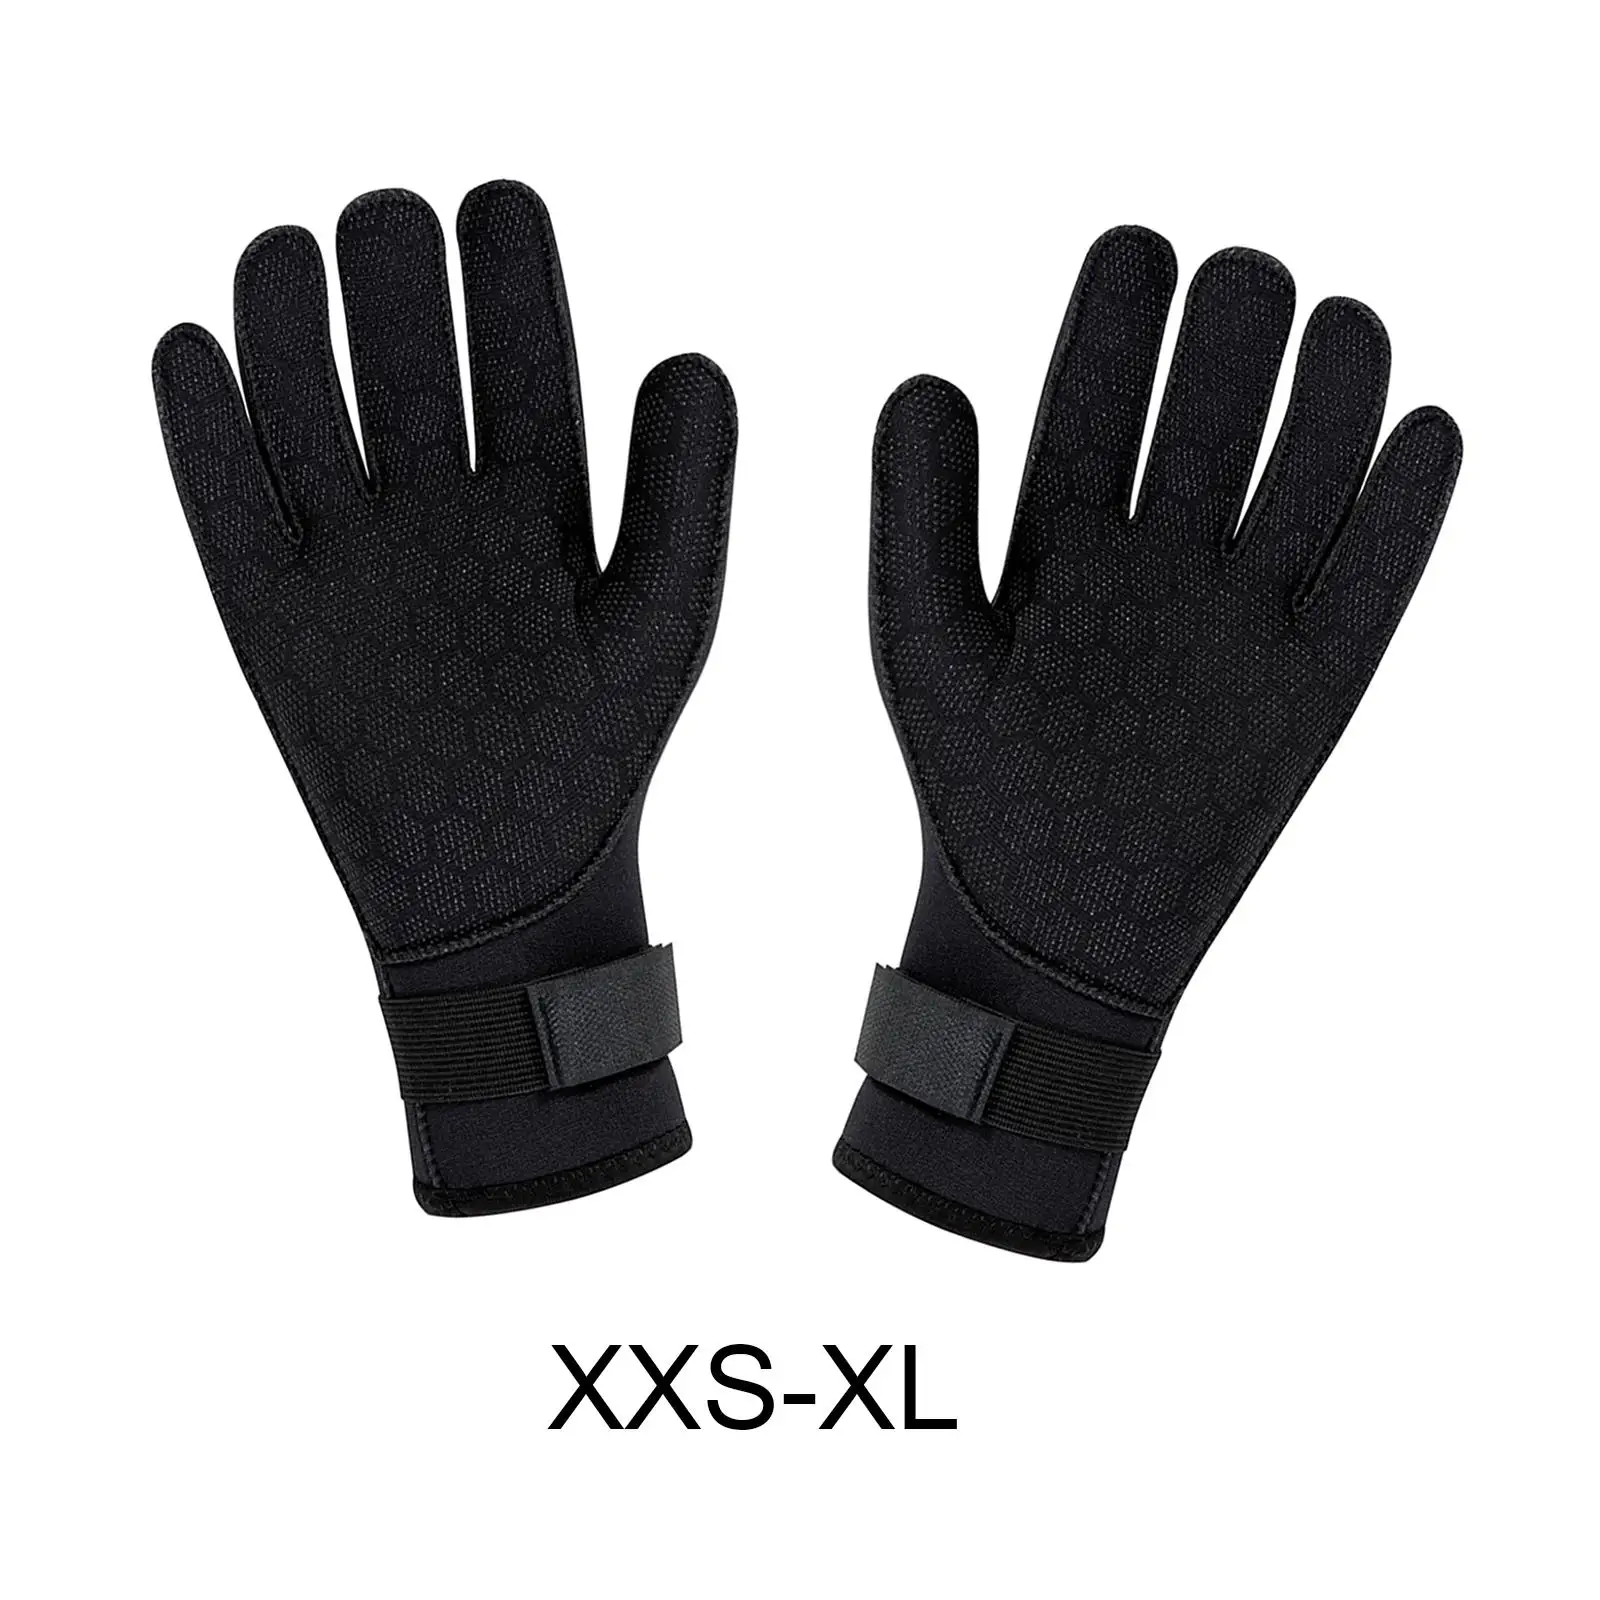 Wetsuit Gloves Thermal 3mm Neoprene Gloves for Men Women Skiing Spearfishing